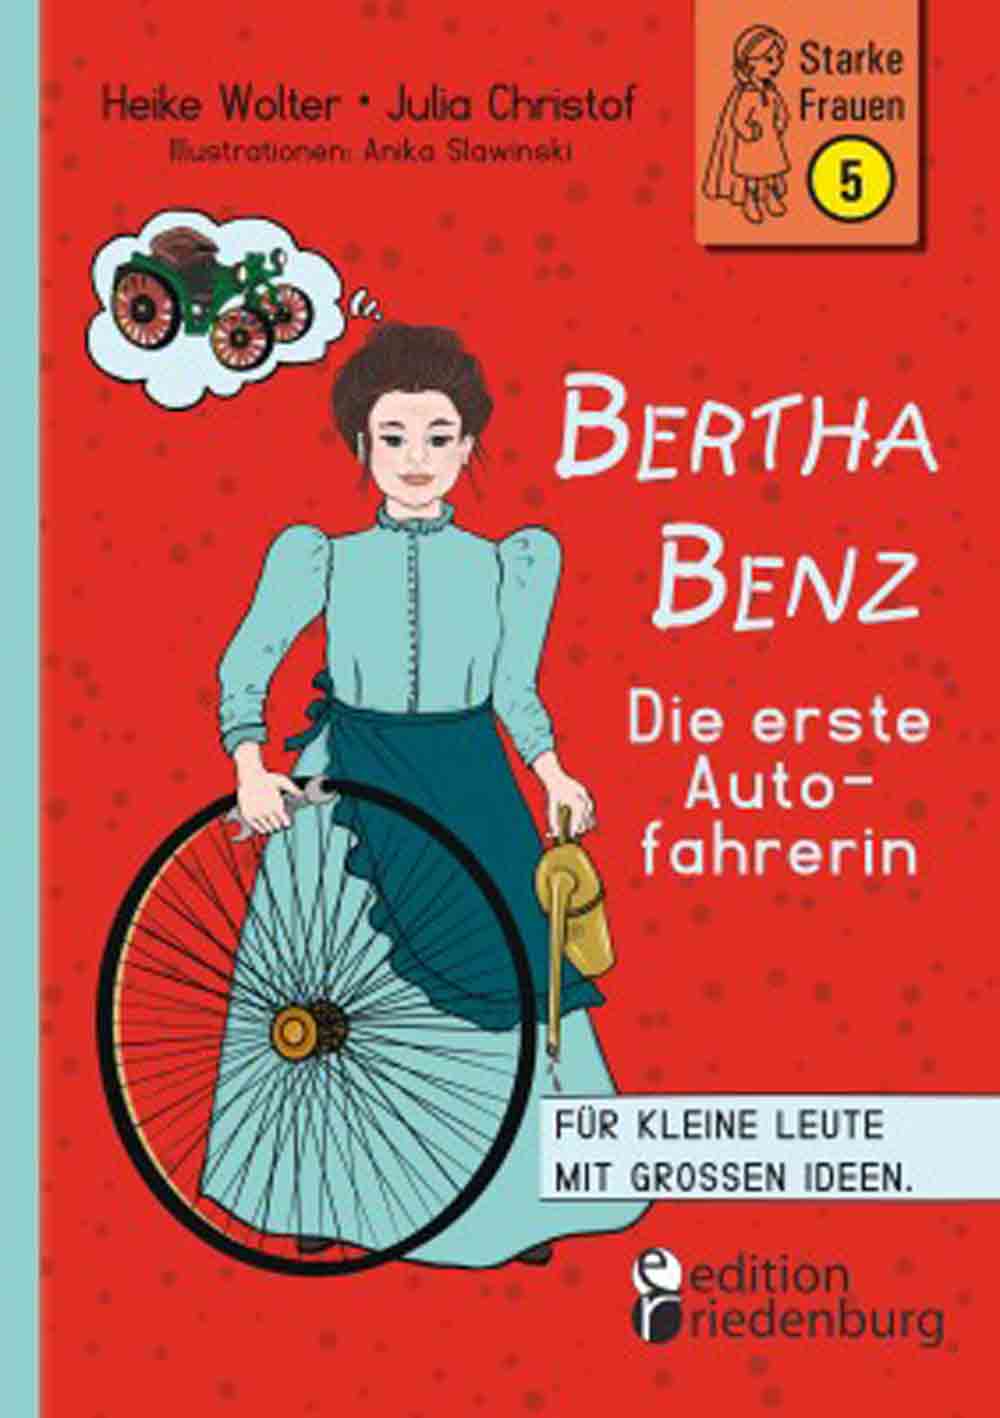 Die Bertha Benz Kinder Biographie beleuchtet eine phantastische Frau: die erste Autofahrerin